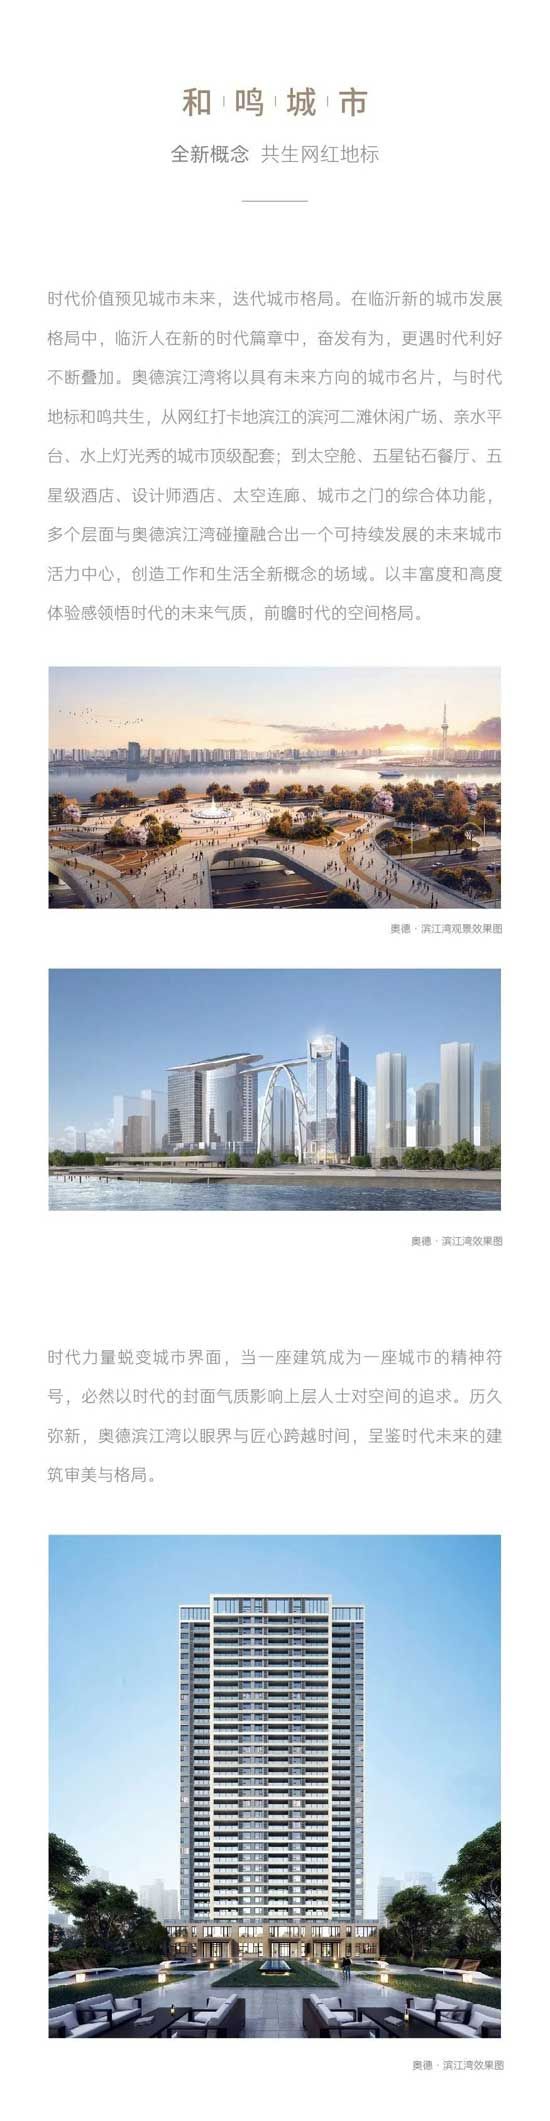 奥德·滨江湾 | 城市未来无限发展的肇启始点